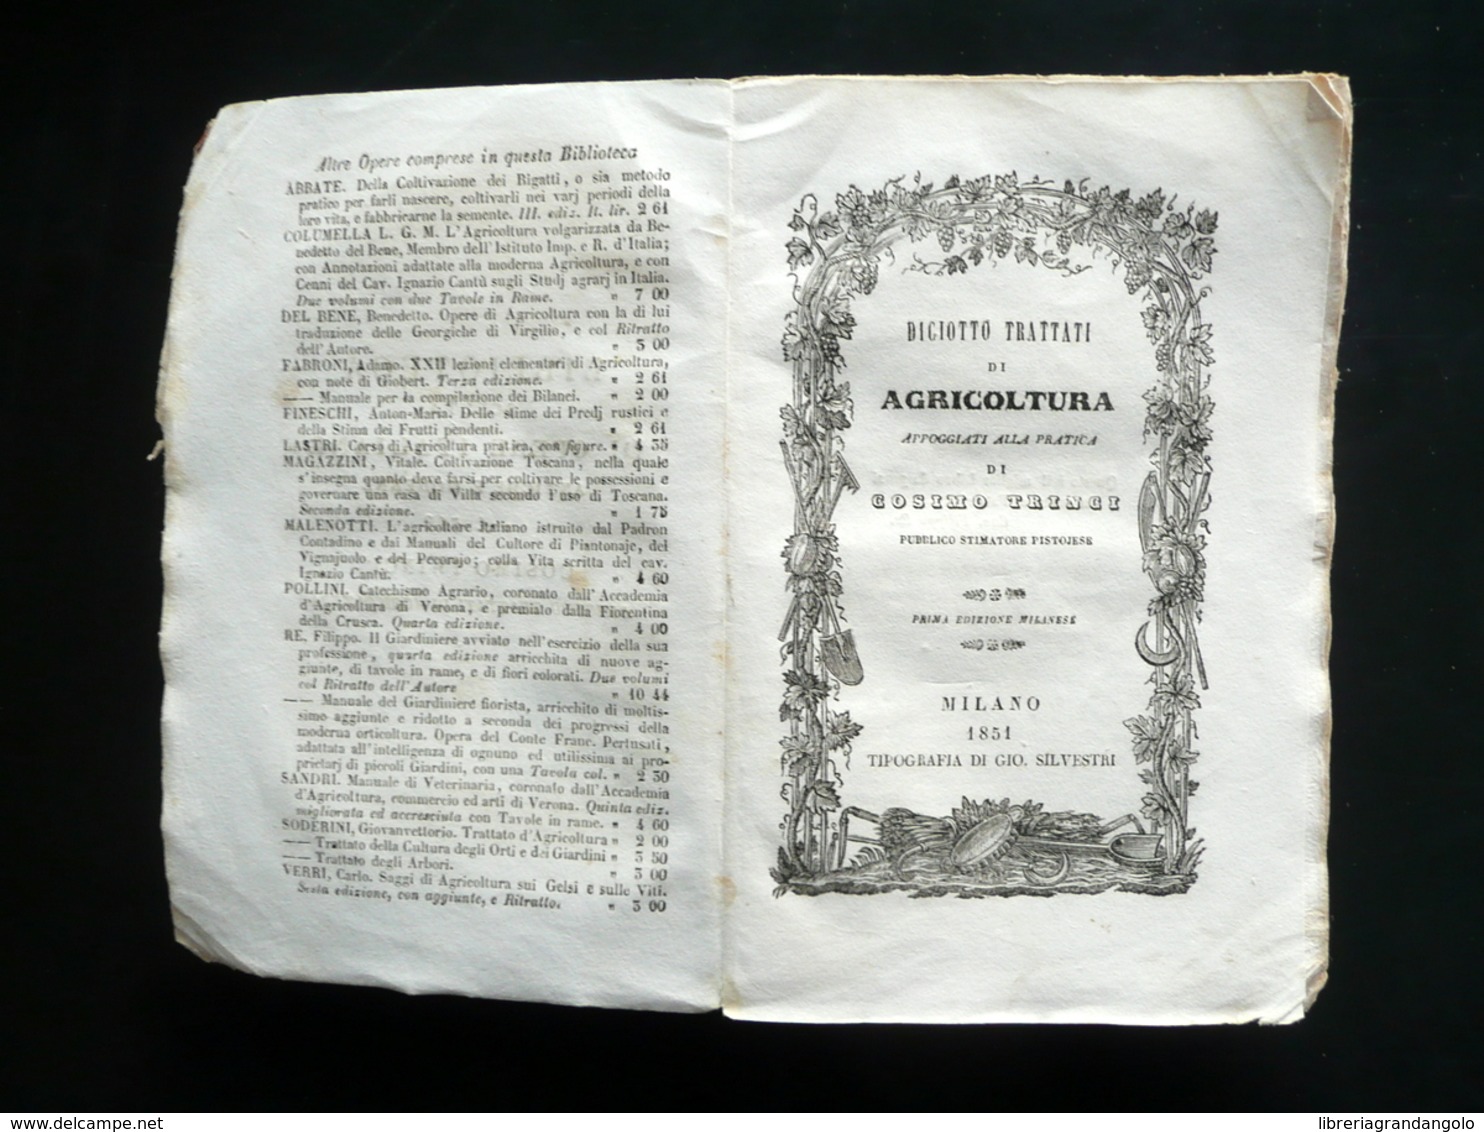 Trinci Diciotto Trattati Di Agricoltura Silvestri Milano 1851 1° Ed. Milanese - Unclassified